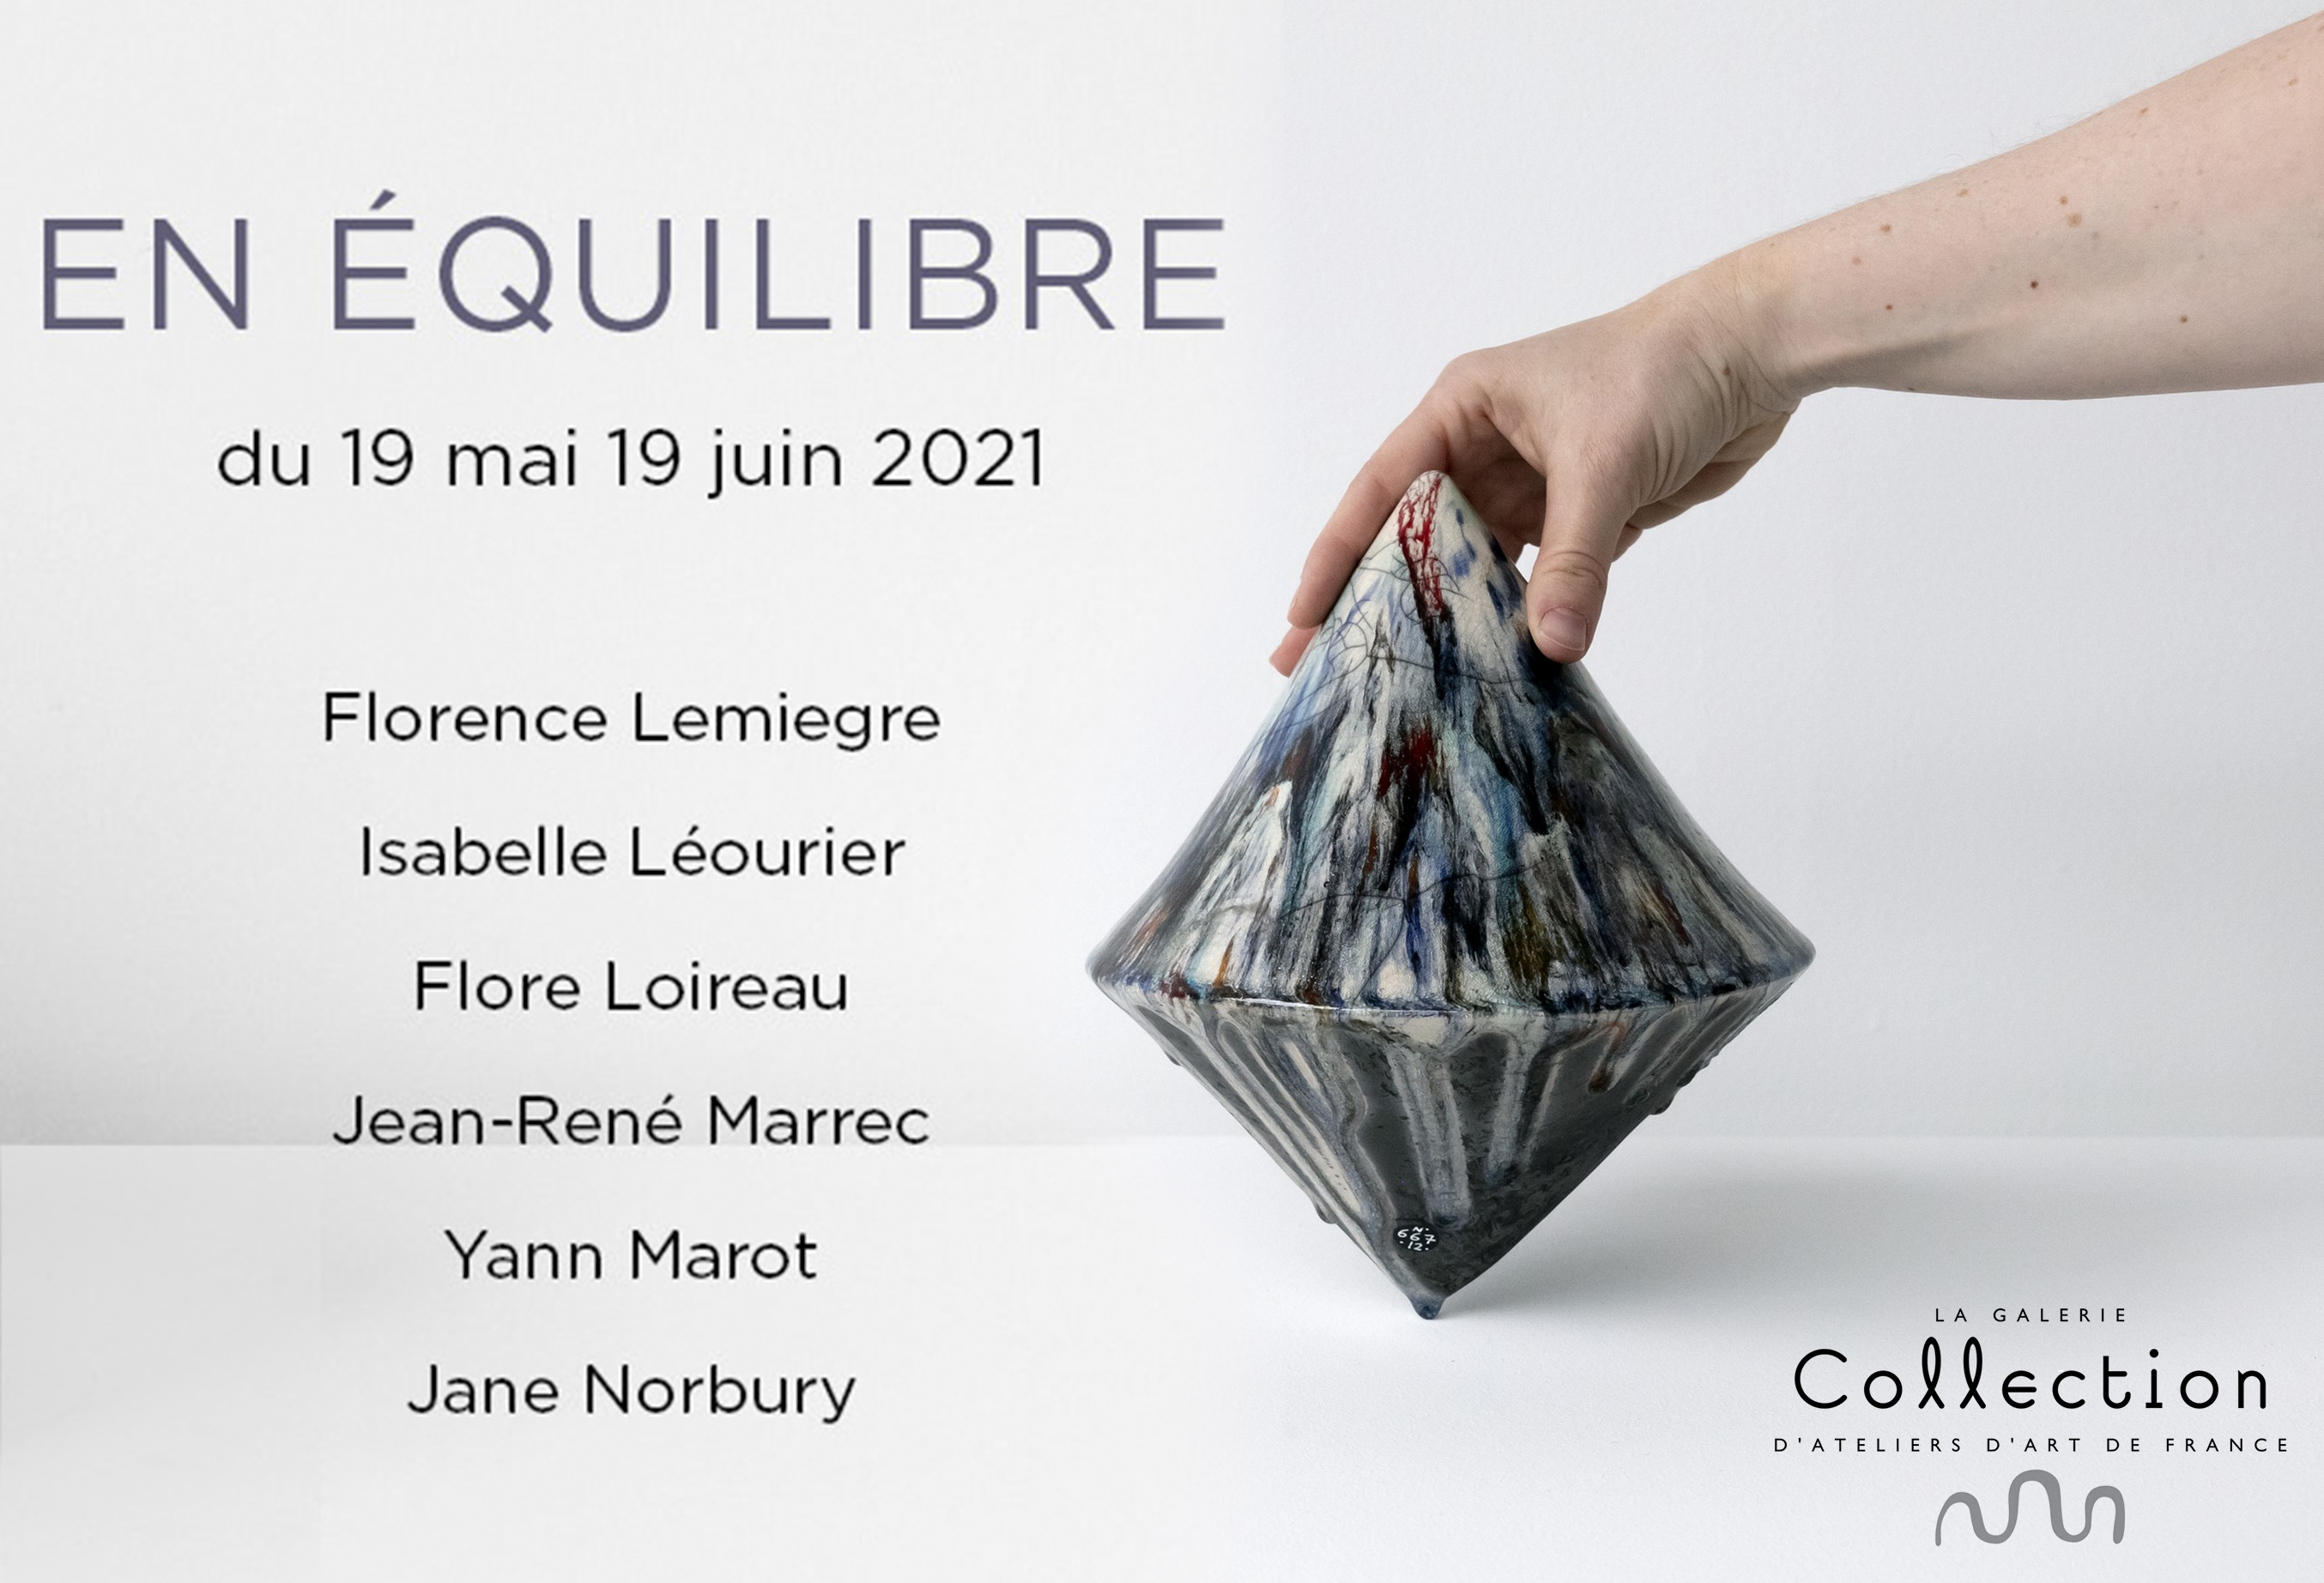 COLLECTION GALLERY - "EN ÉQUILIBRE" EXHIBITION - ceramic sculptures - Works by Florence Lemiegre - Ceramic sculptor - 6 rue de Picardie - Paris 3rd